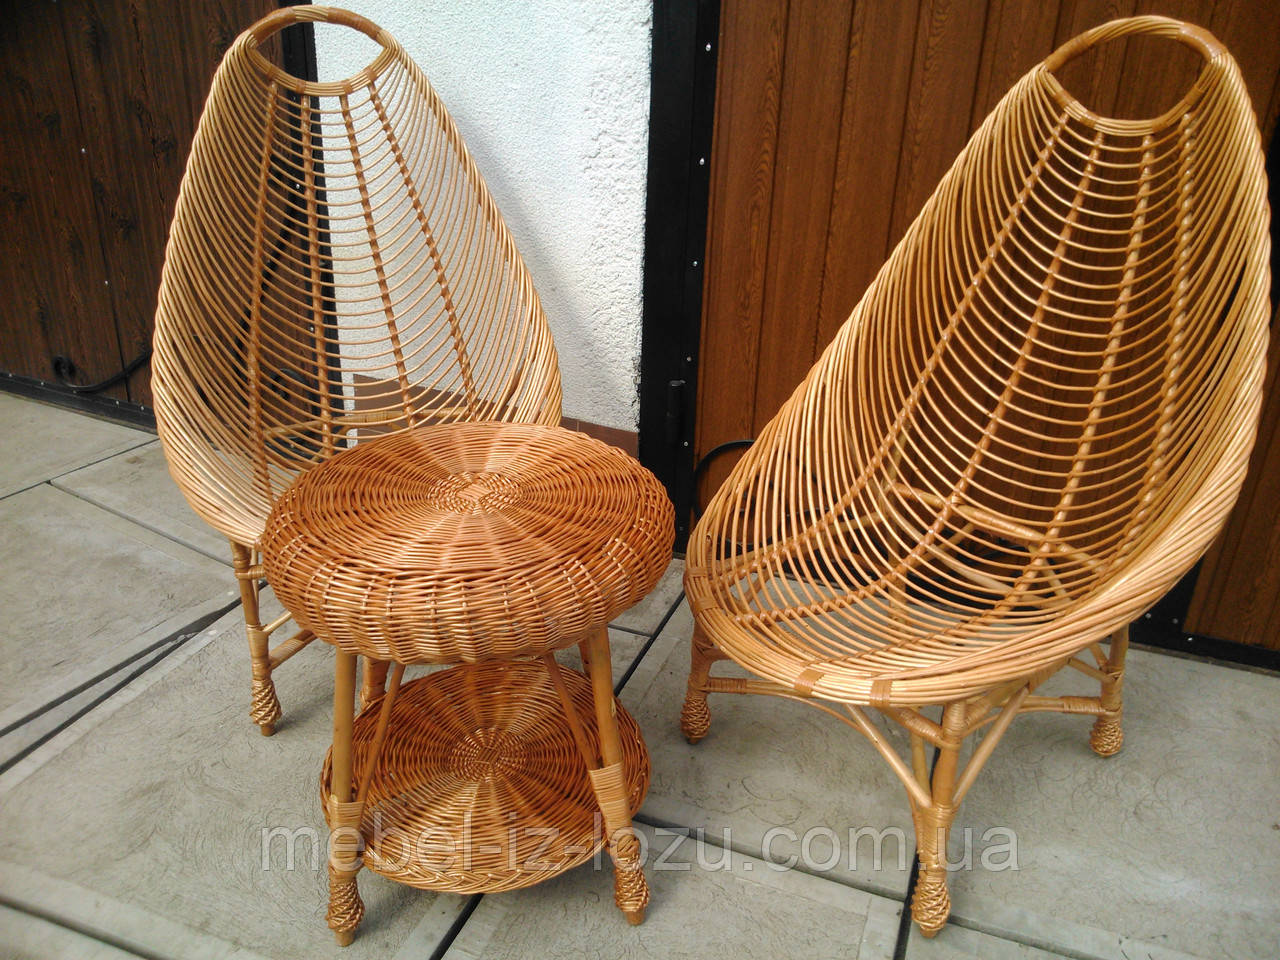 Столик лоза. Мебель из ивовой лозы. Плетеное кресло. Плетёная мебель из лозы. Стул из лозы.